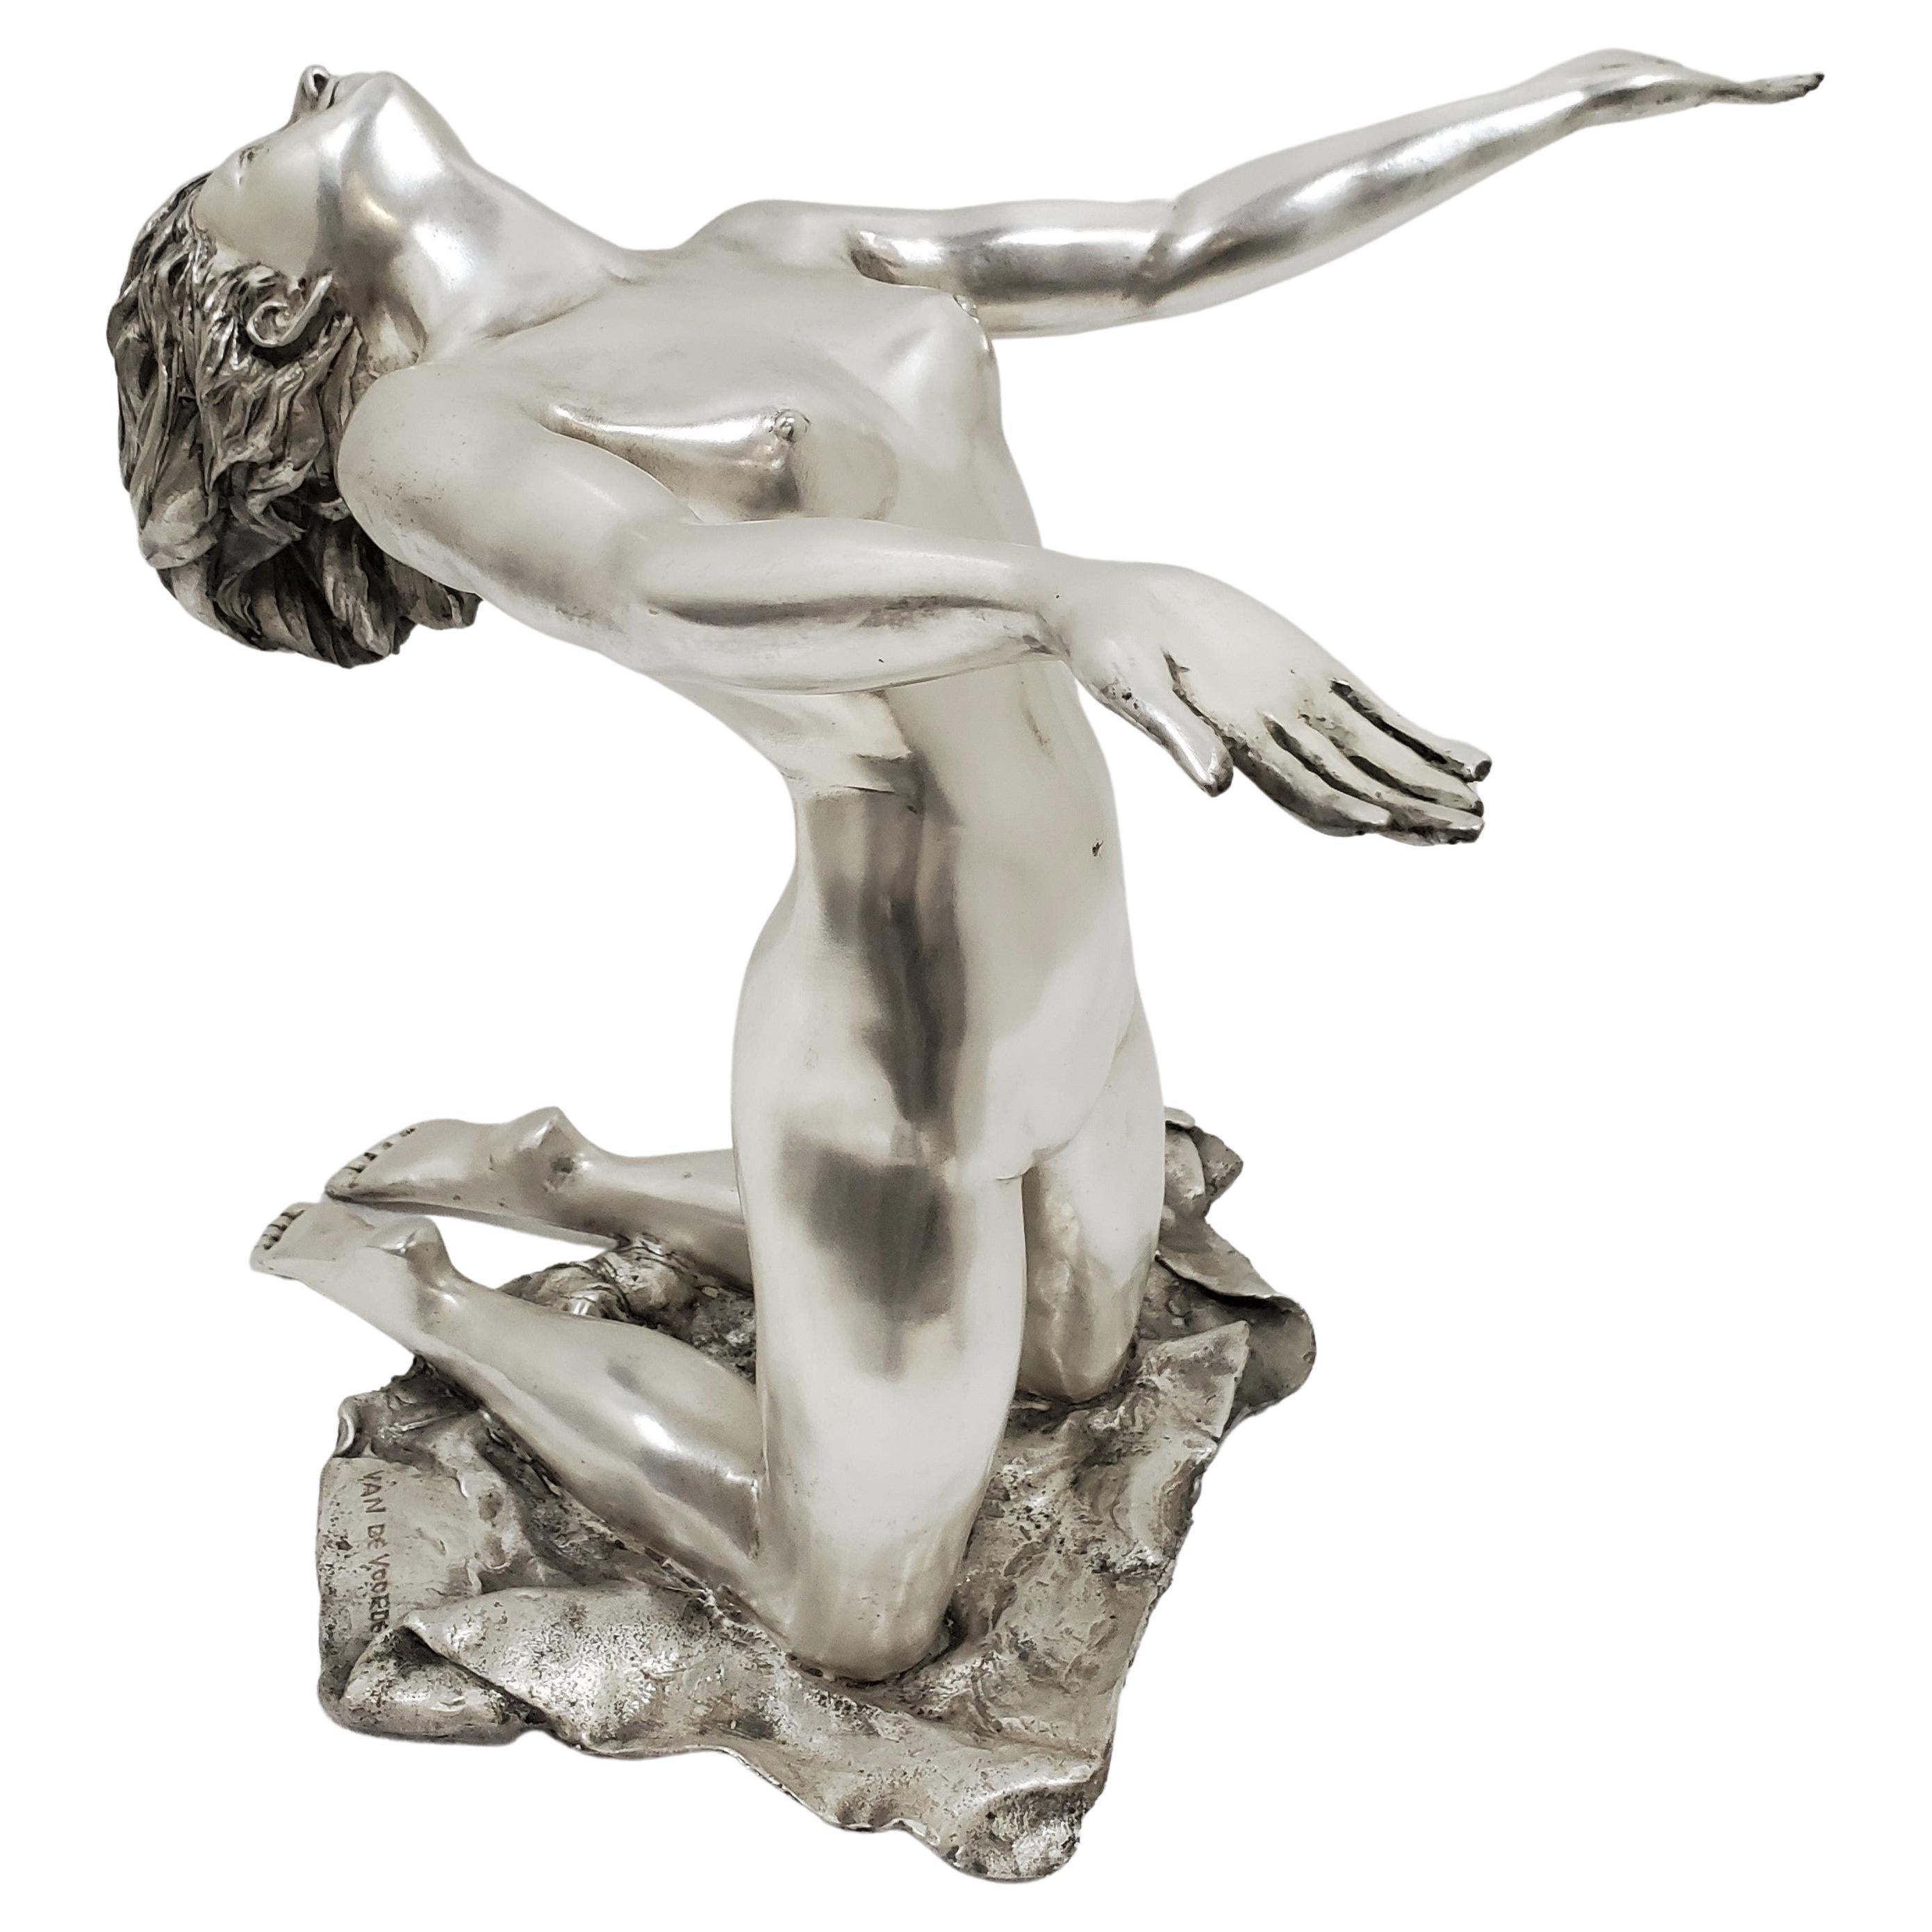 Une grande et imposante statue signée d'une jeune femme agenouillée dans une pose de yoga en flexion arrière avec les bras tendus. La figure féminine naturaliste présente une forme athlétique, une forme d'arc, une gracieuse position de prière / de